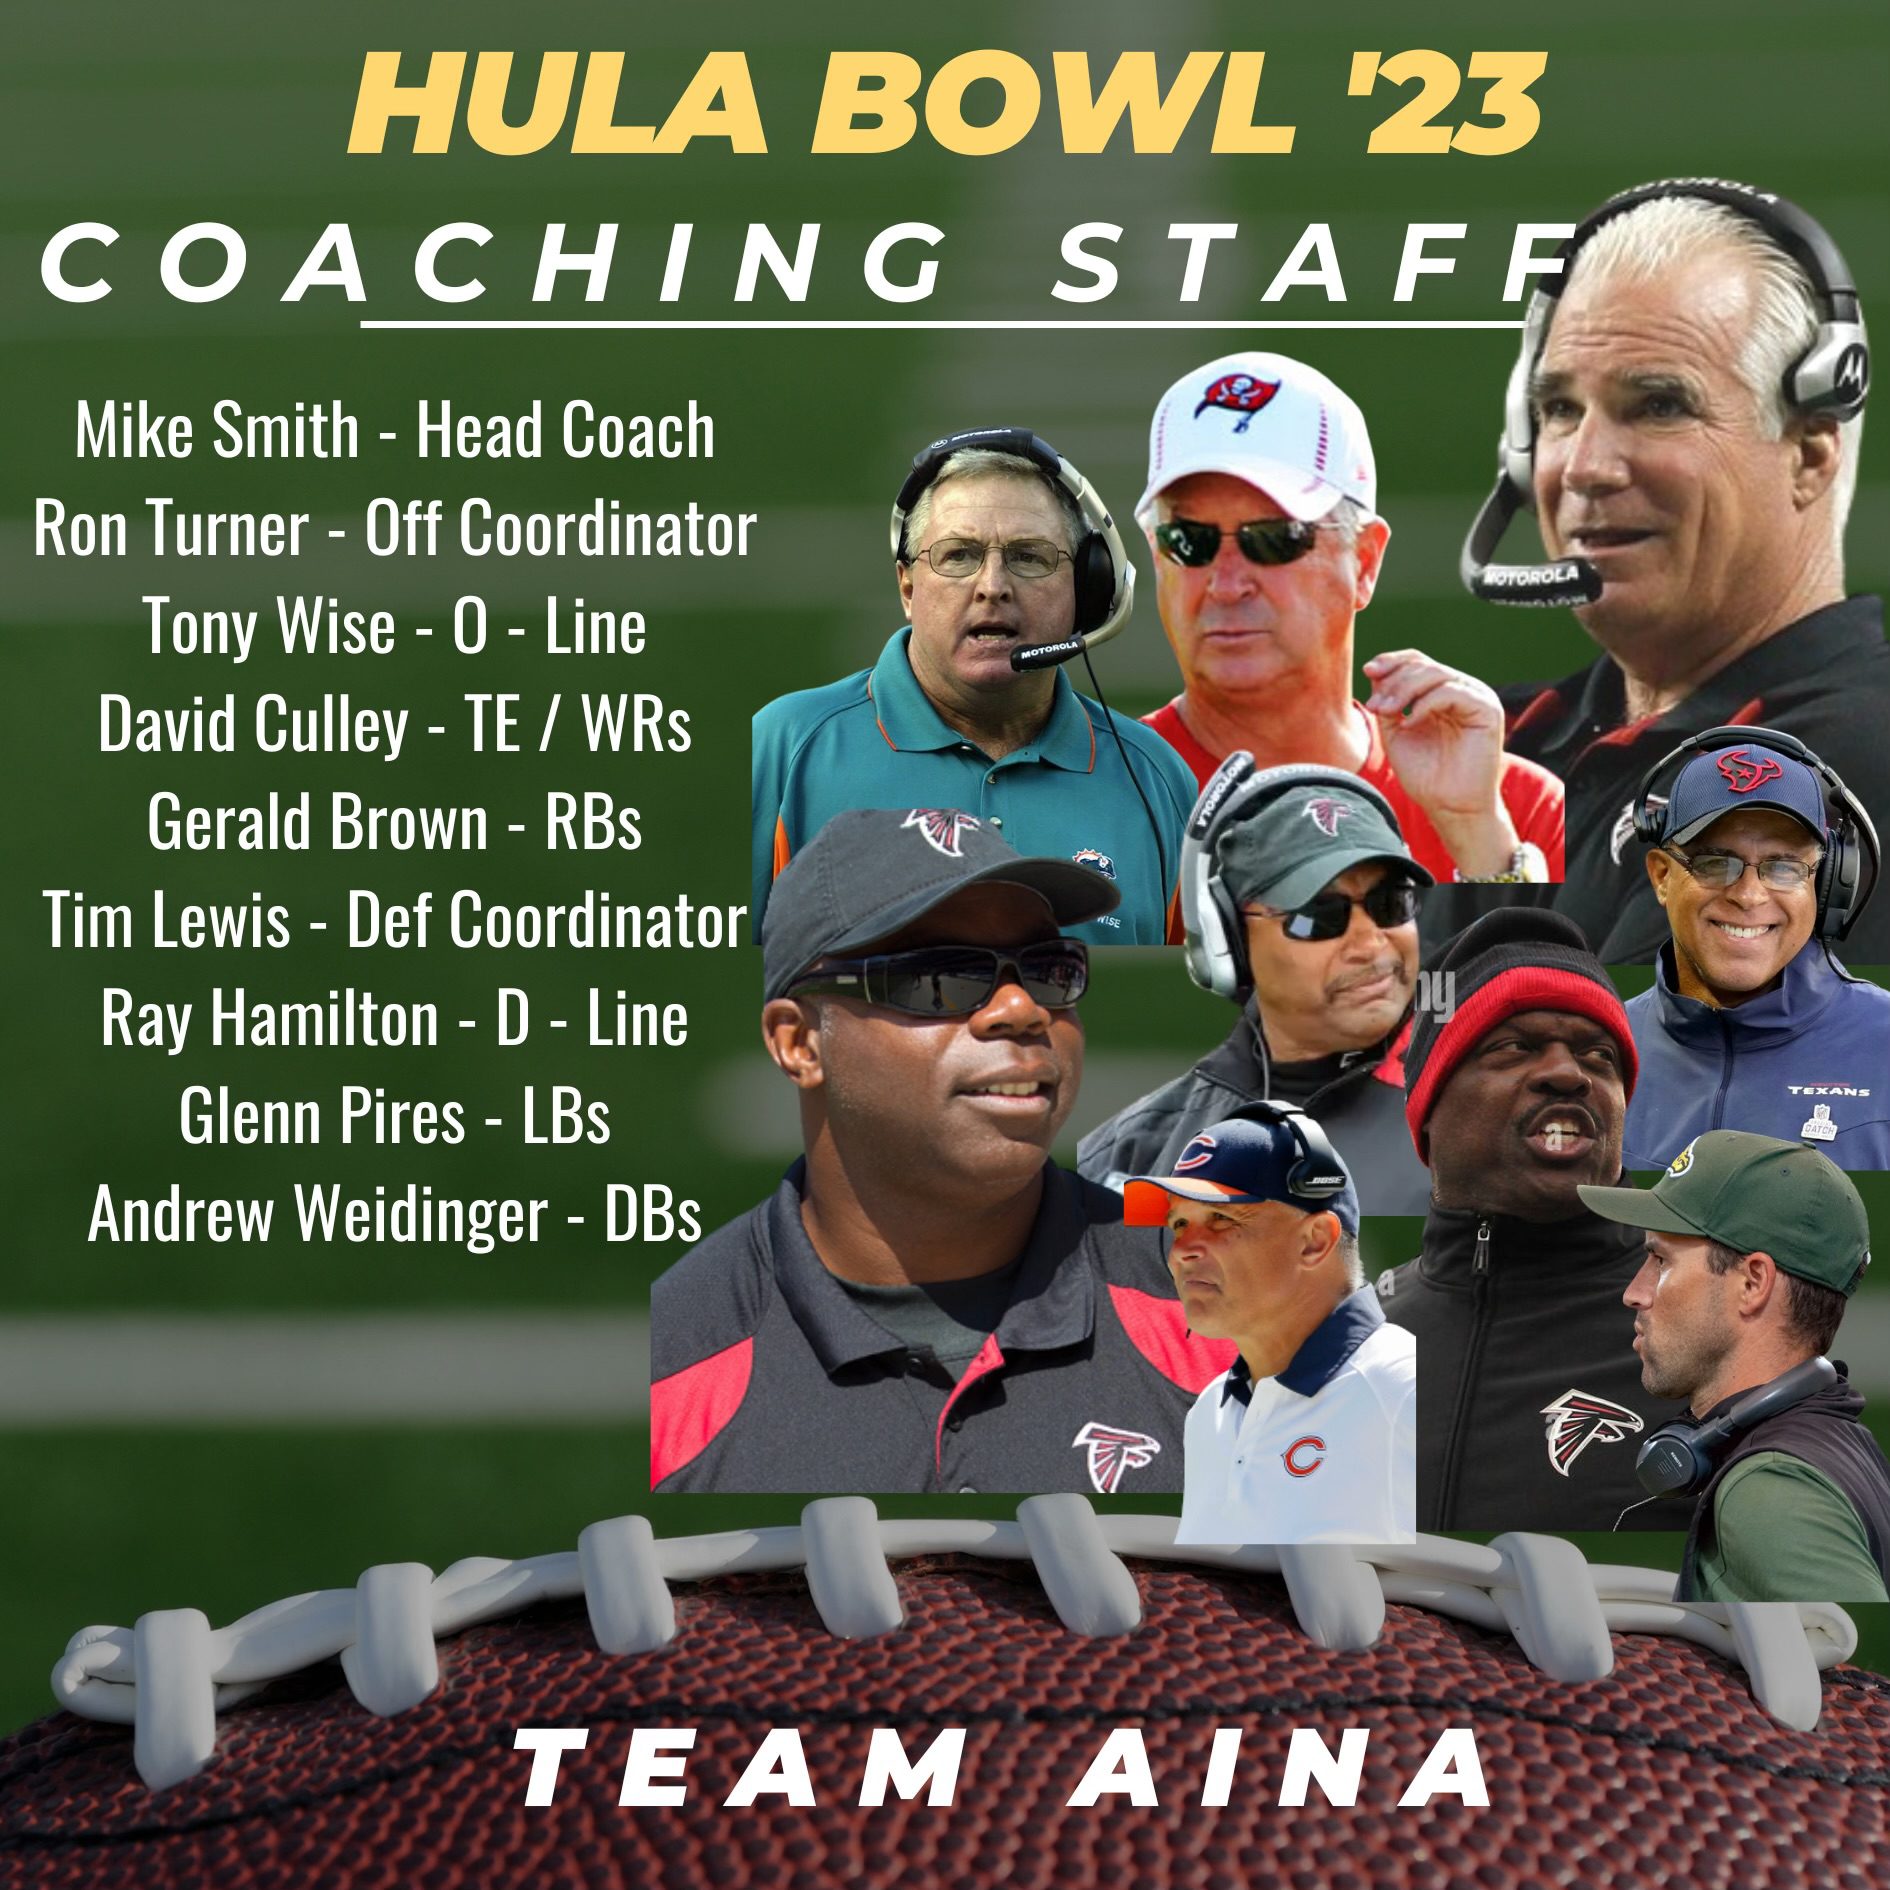 Hula Bowl Coaching Staff has over 500 years of coaching